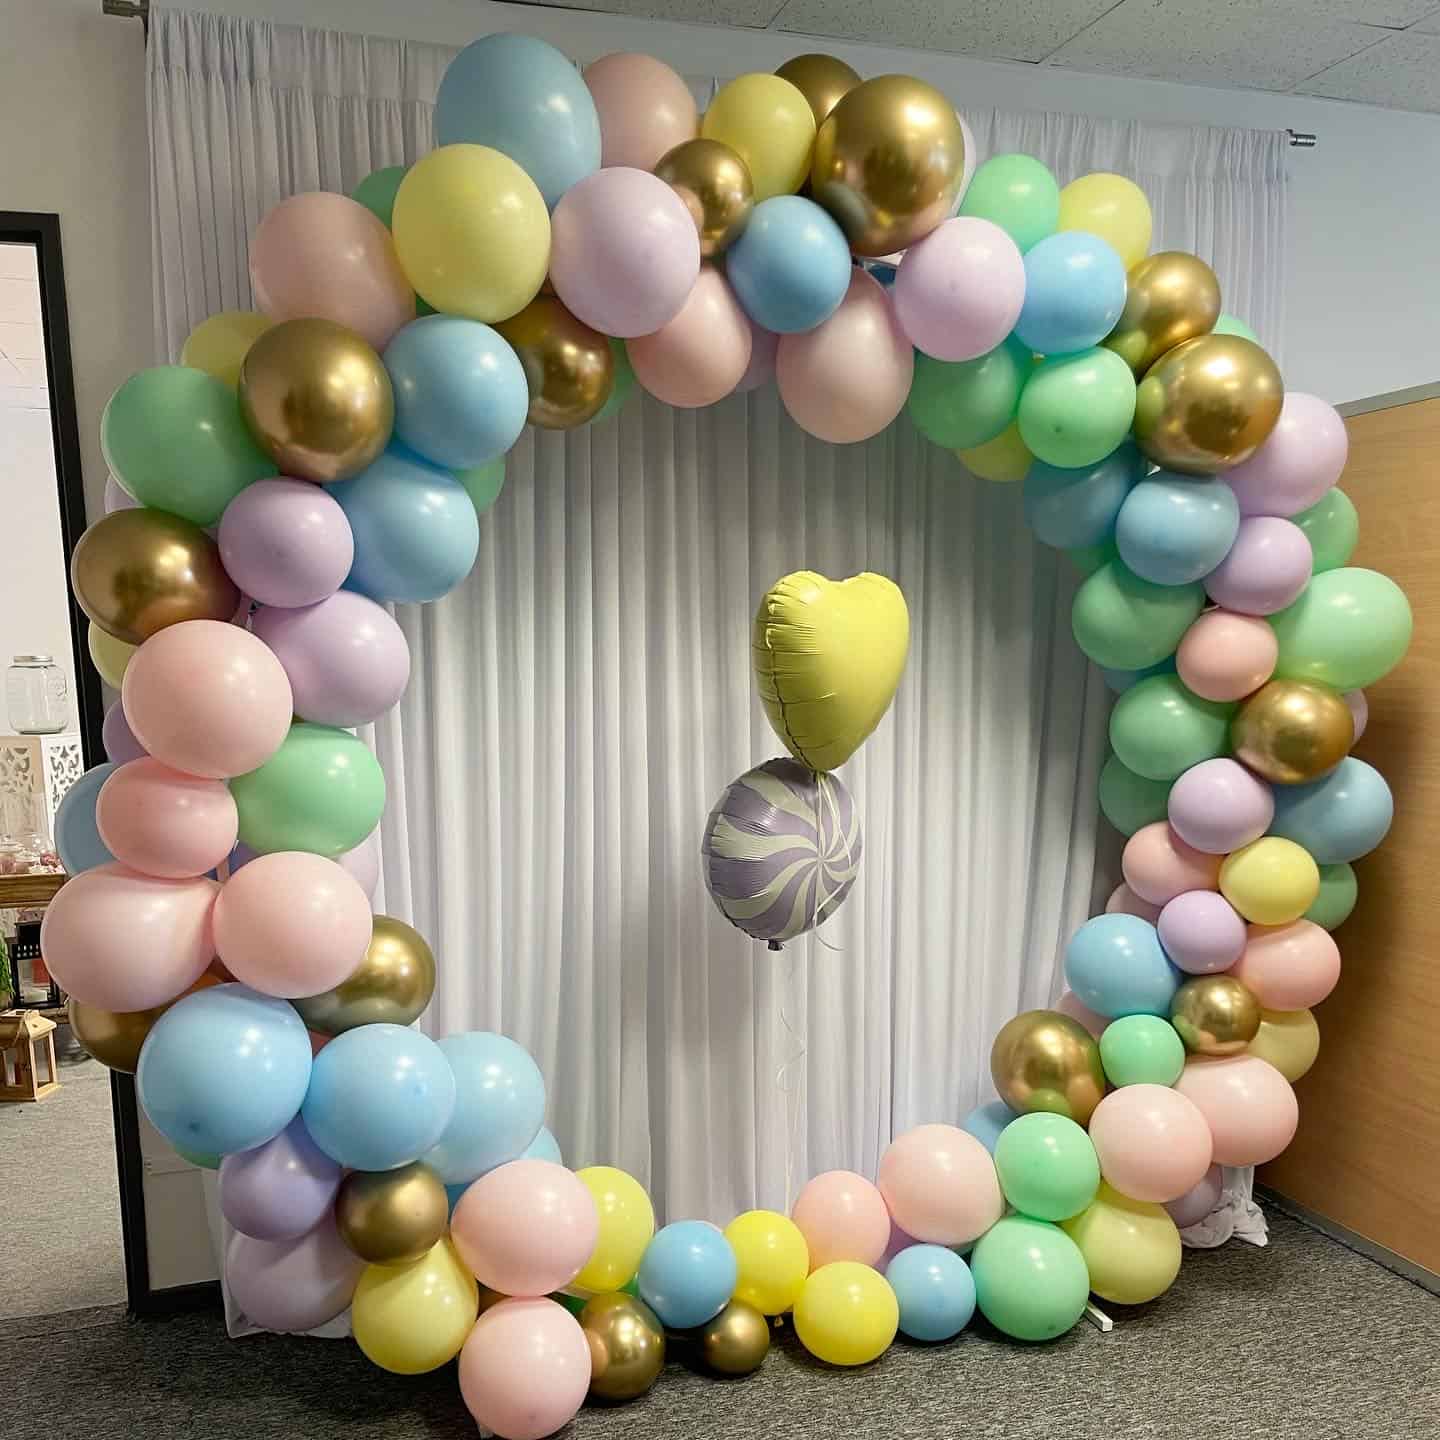 Structure de ballons gonflés à l'air en forme de coeur à l